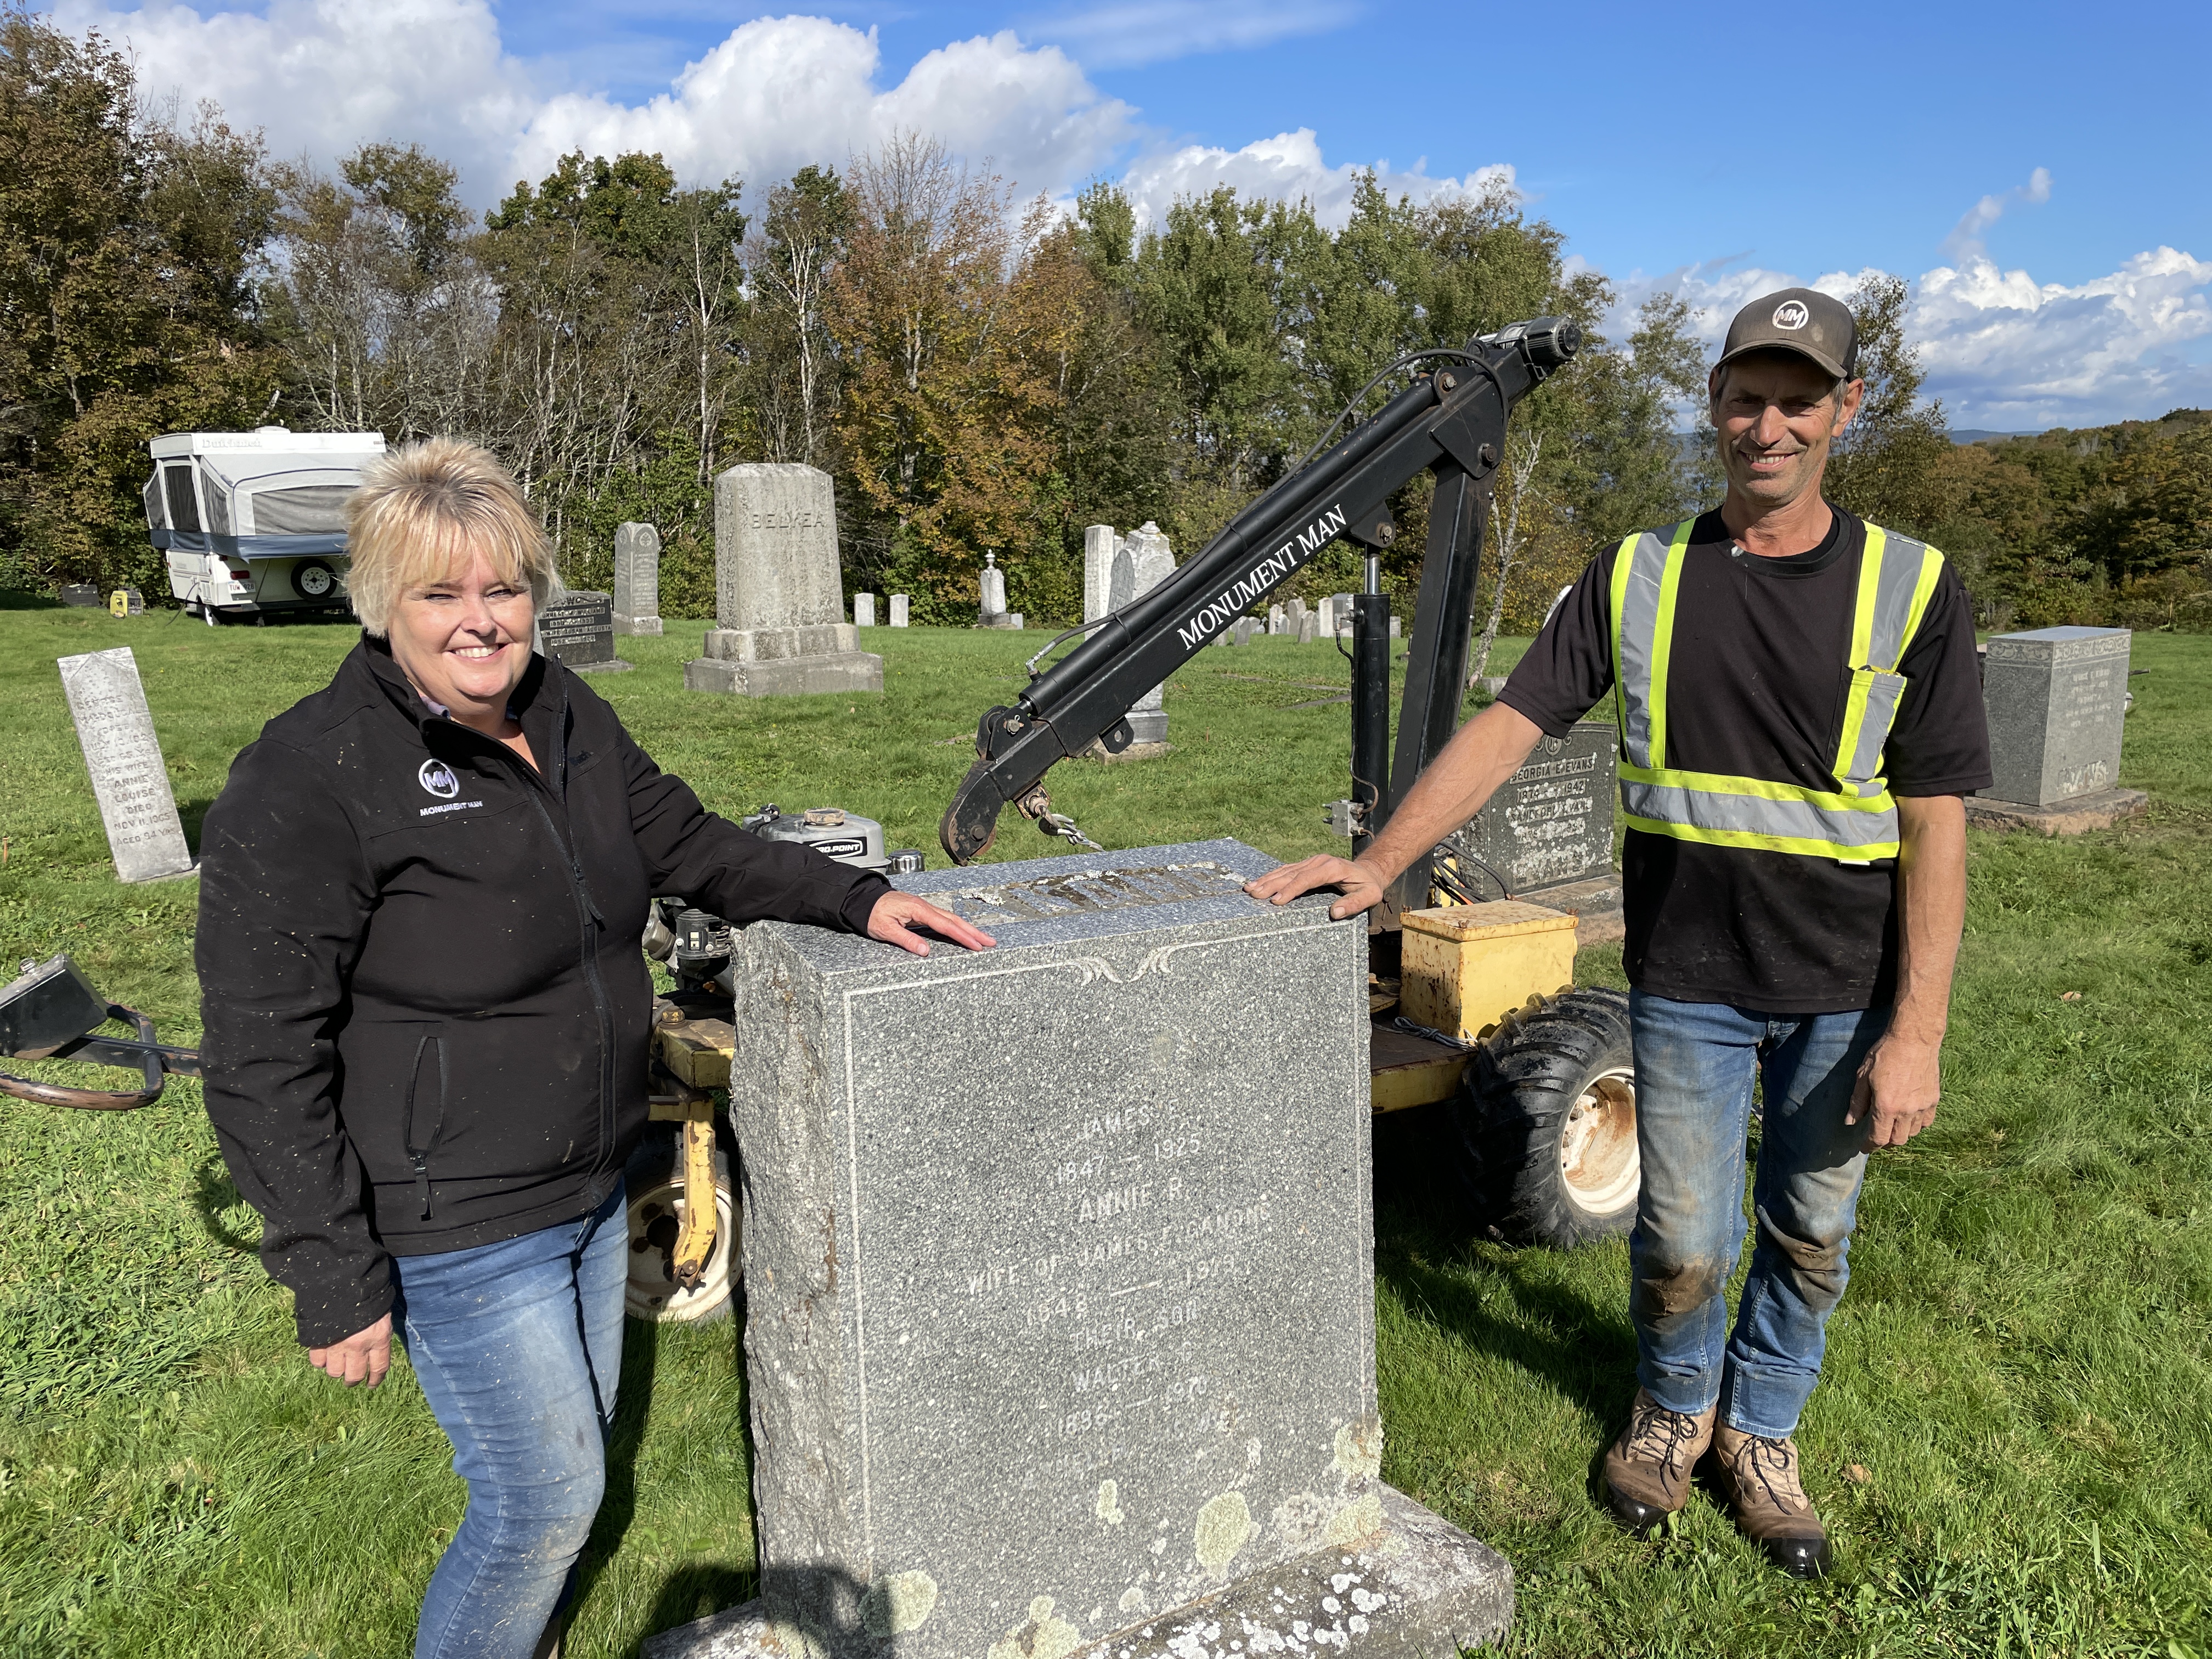 New Brunswick couple work to restore broken historic headstones